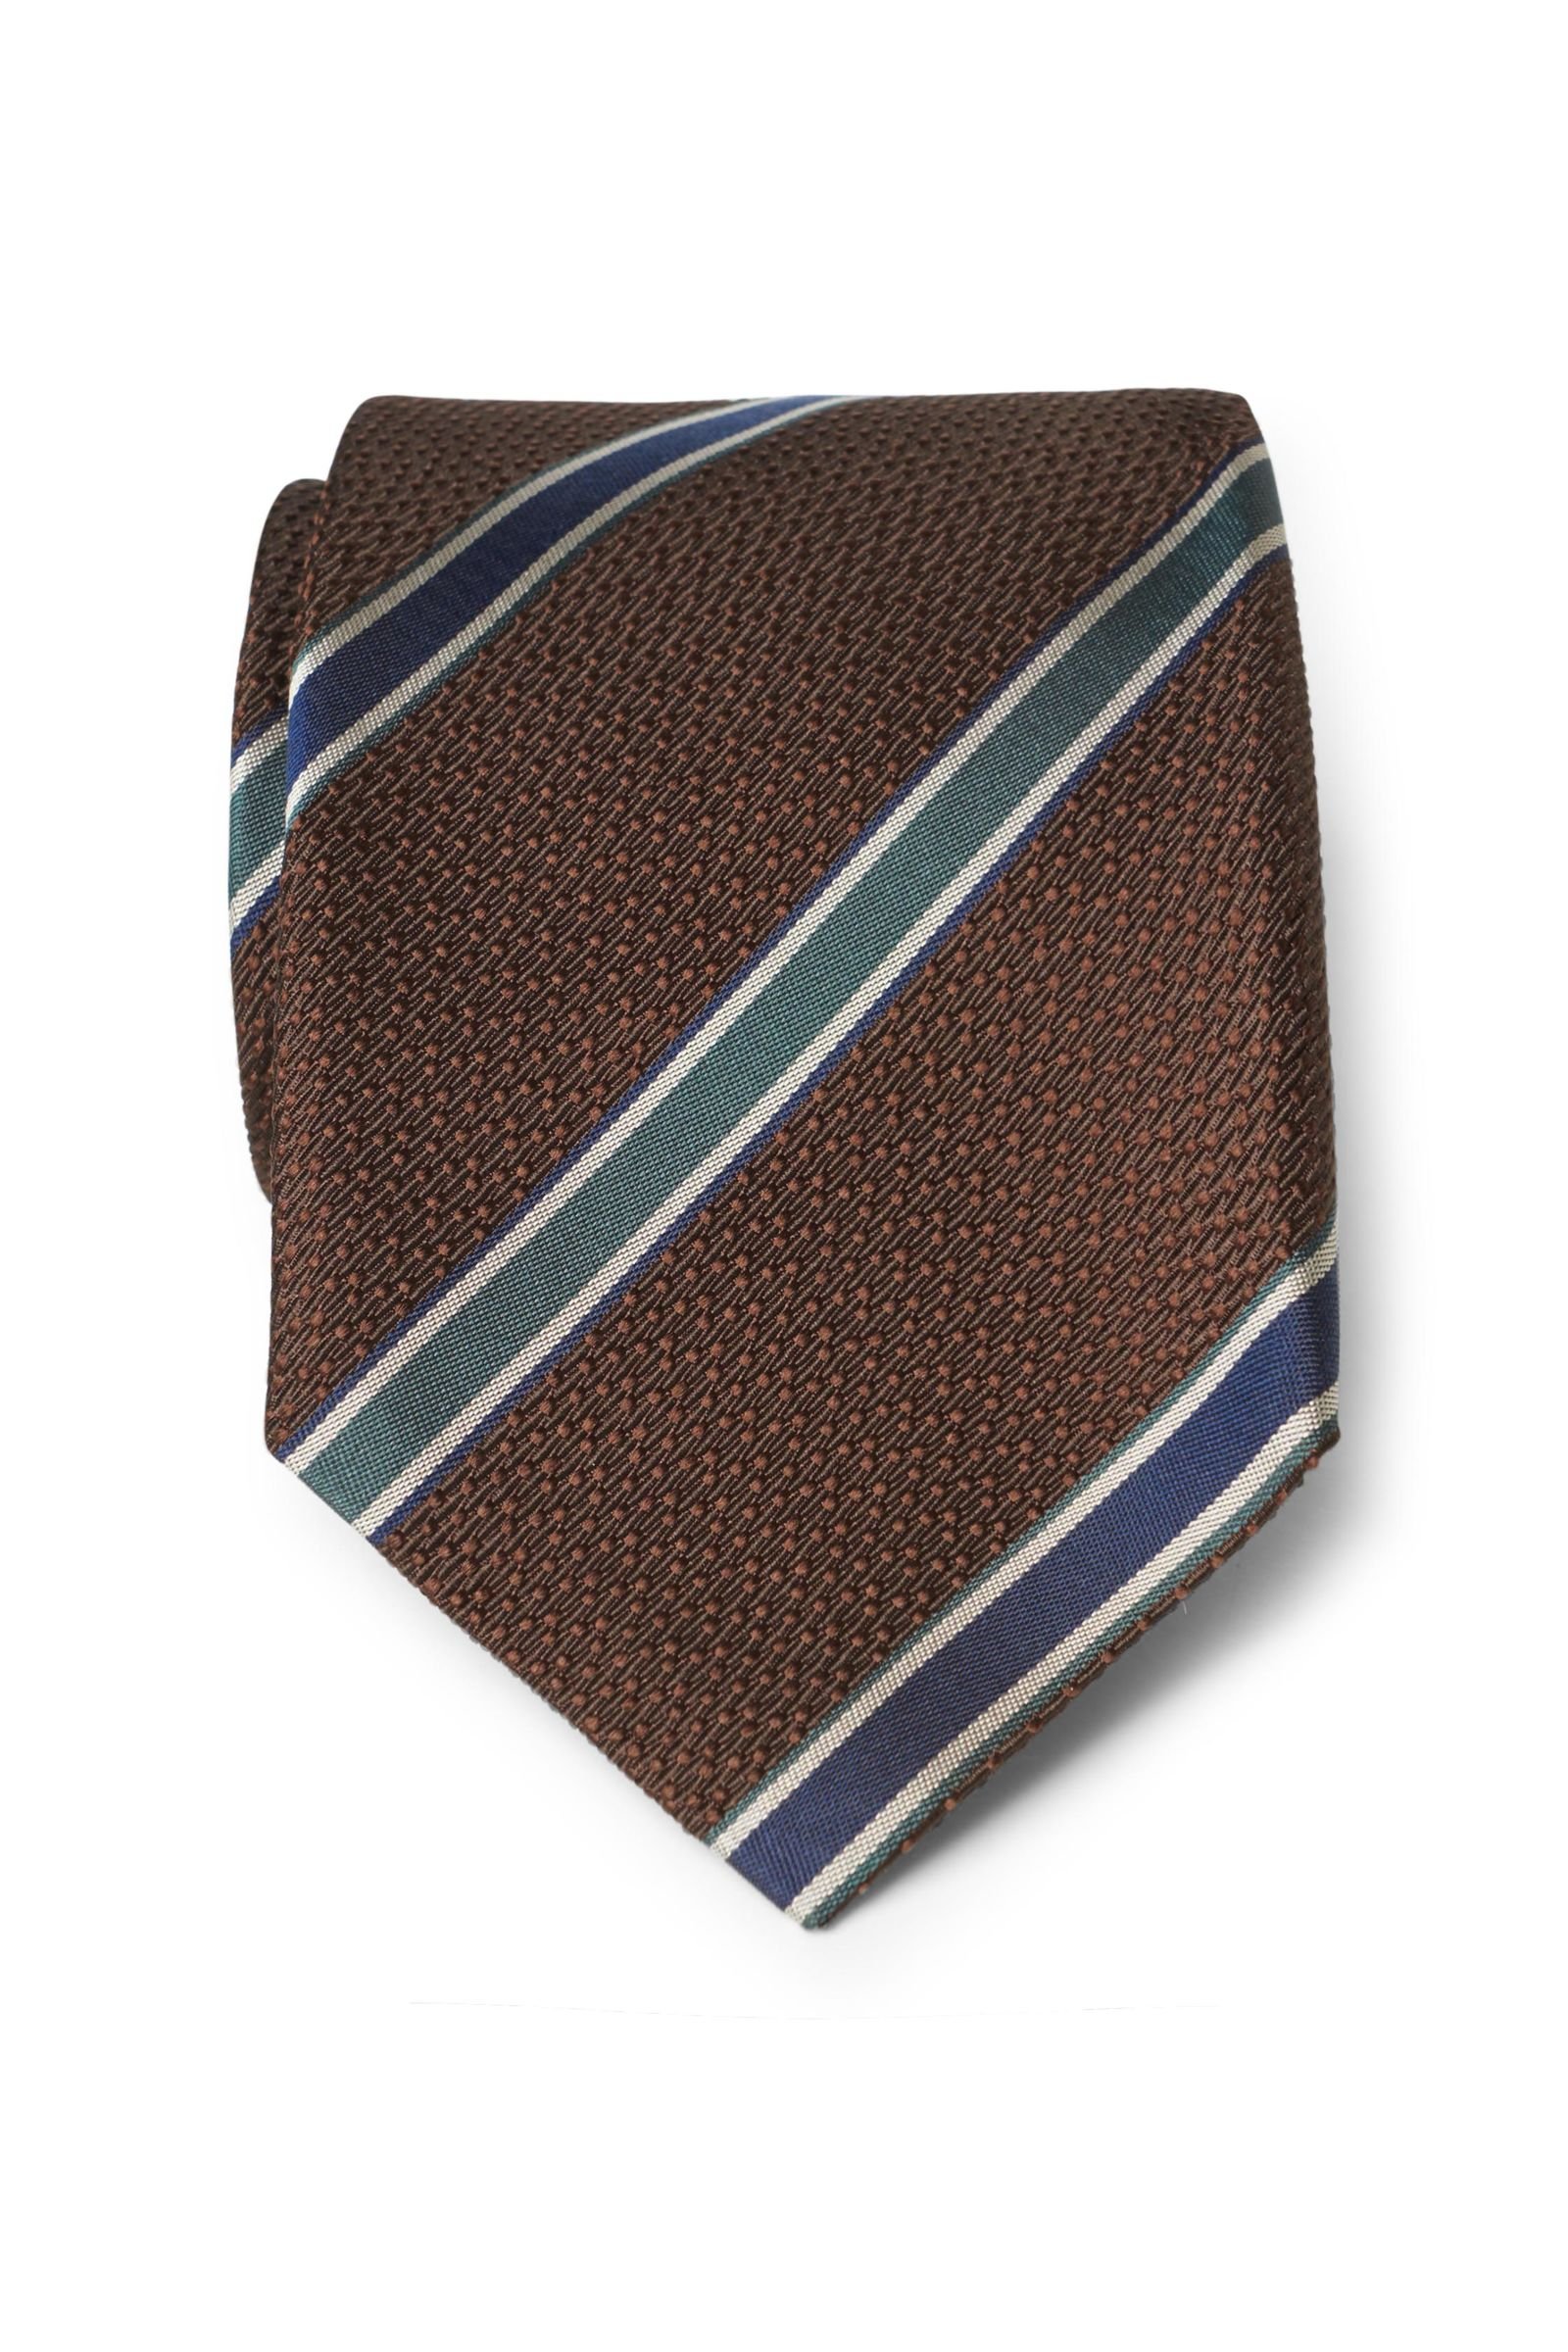 Silk tie dark brown striped